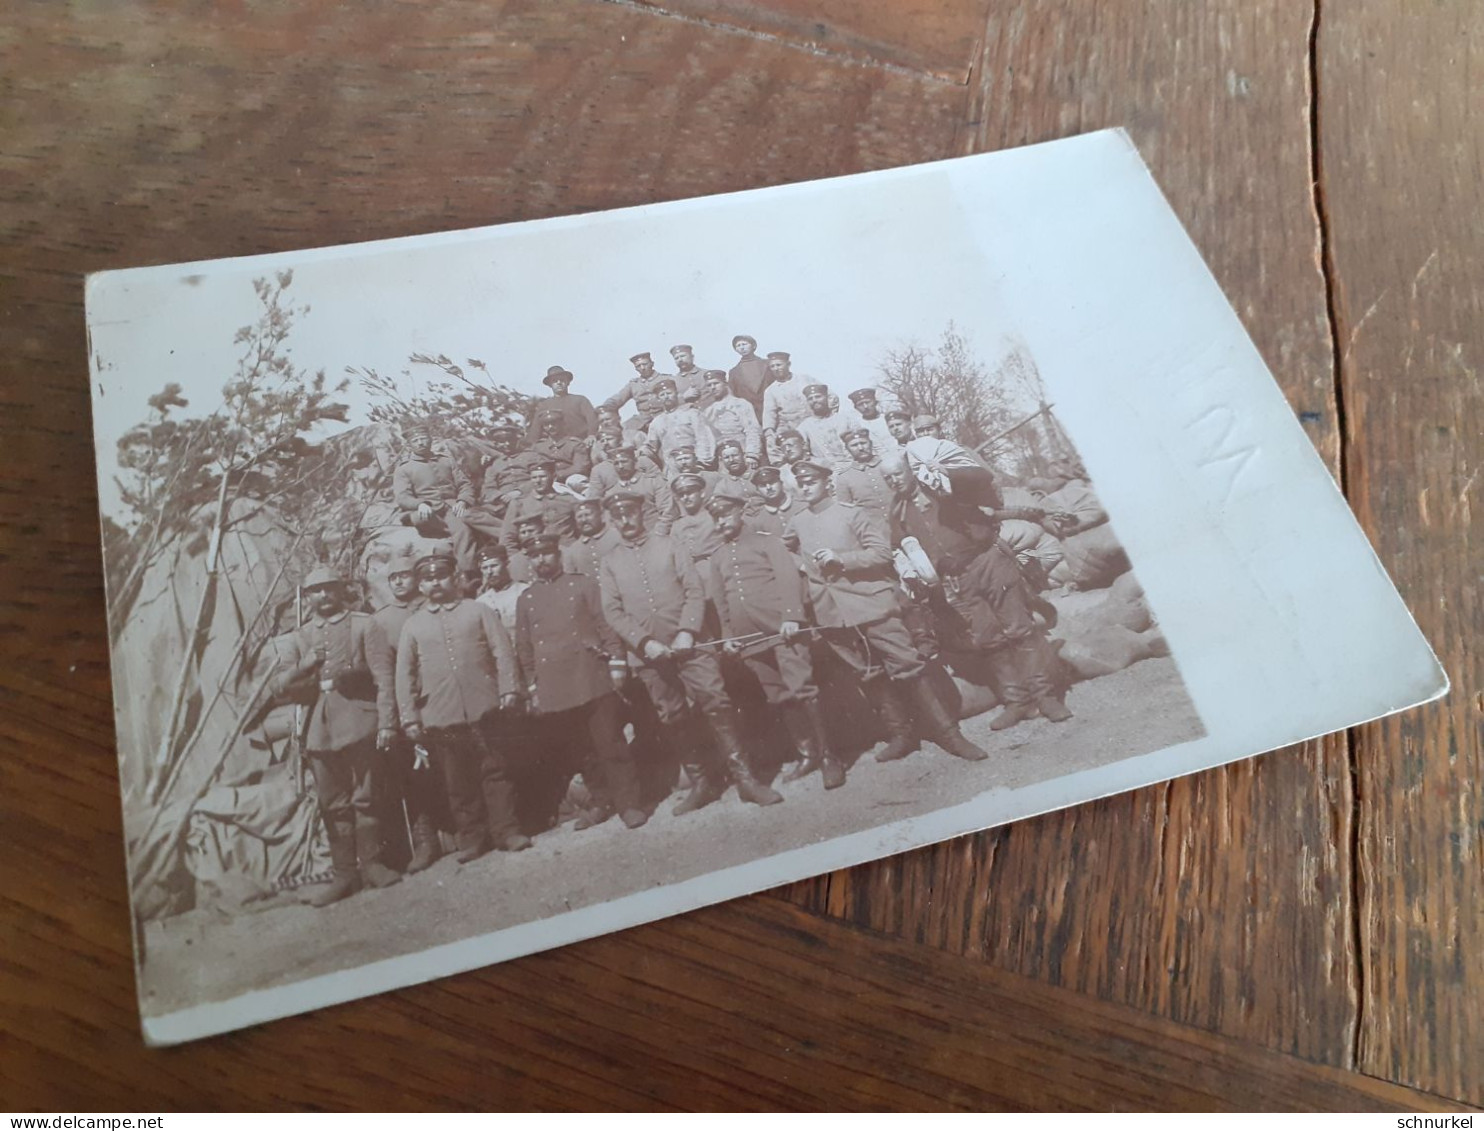 JOHANNISBURG - RUSSLAND - PREUSSISCH EYLAU - 1915 - OFFIZIERE SOLDATEN In POSE - BRUNO An MARTHA REUST Nach GRAUDENZ - Krieg, Militär